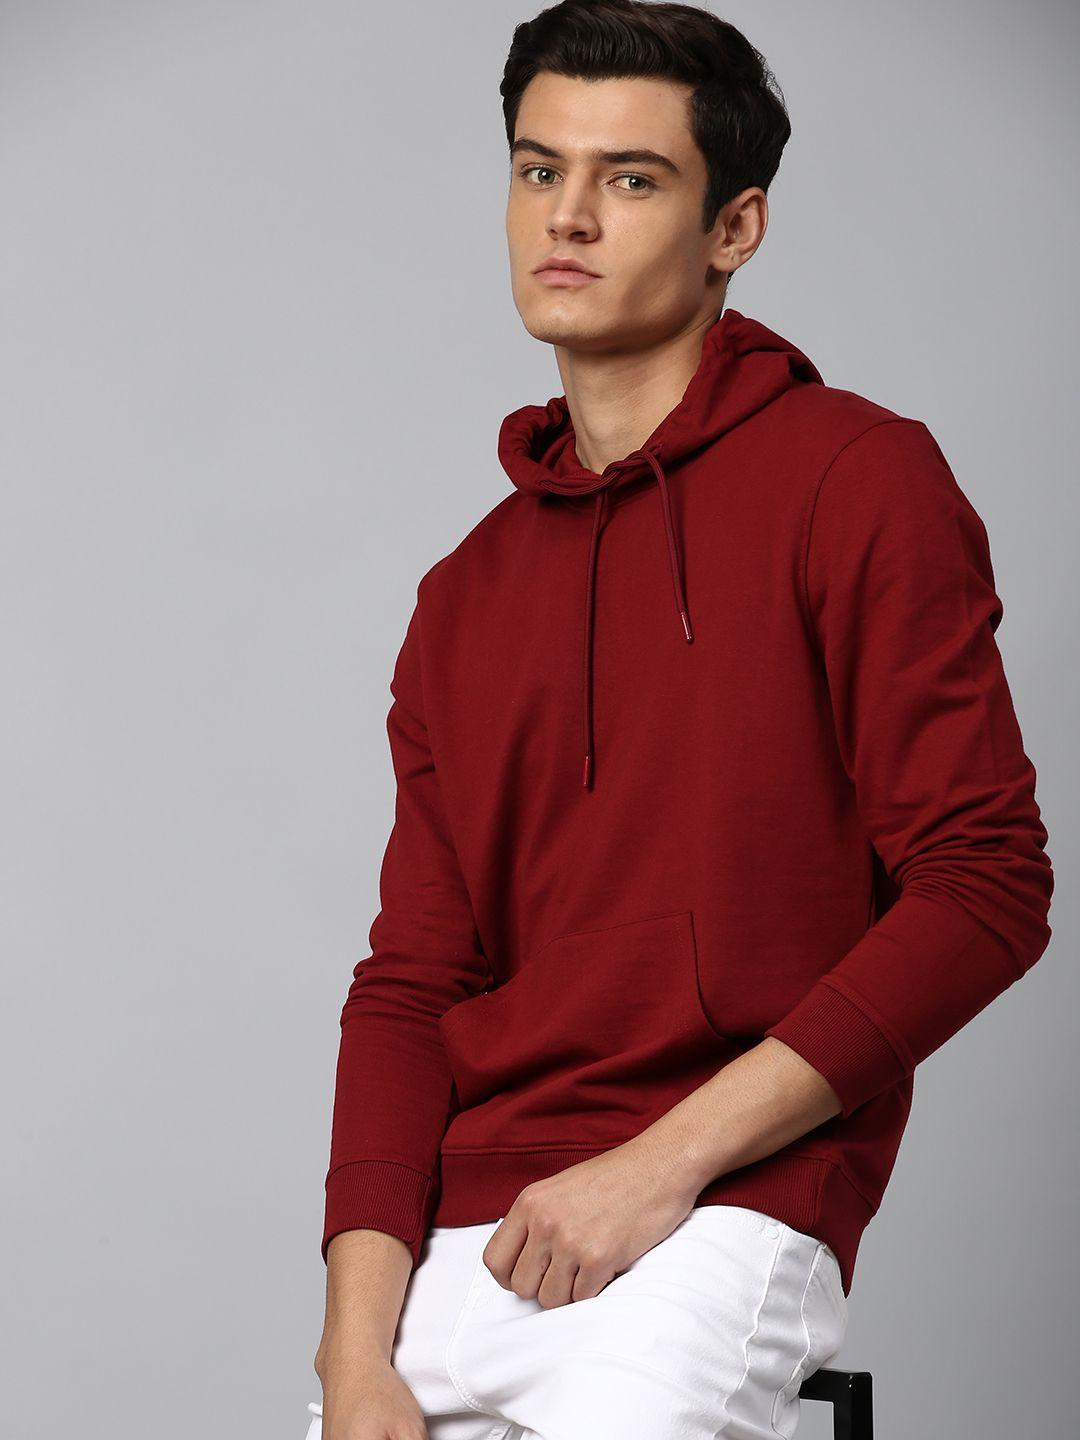 dennis-lingo-men-red-hooded-sweatshirt